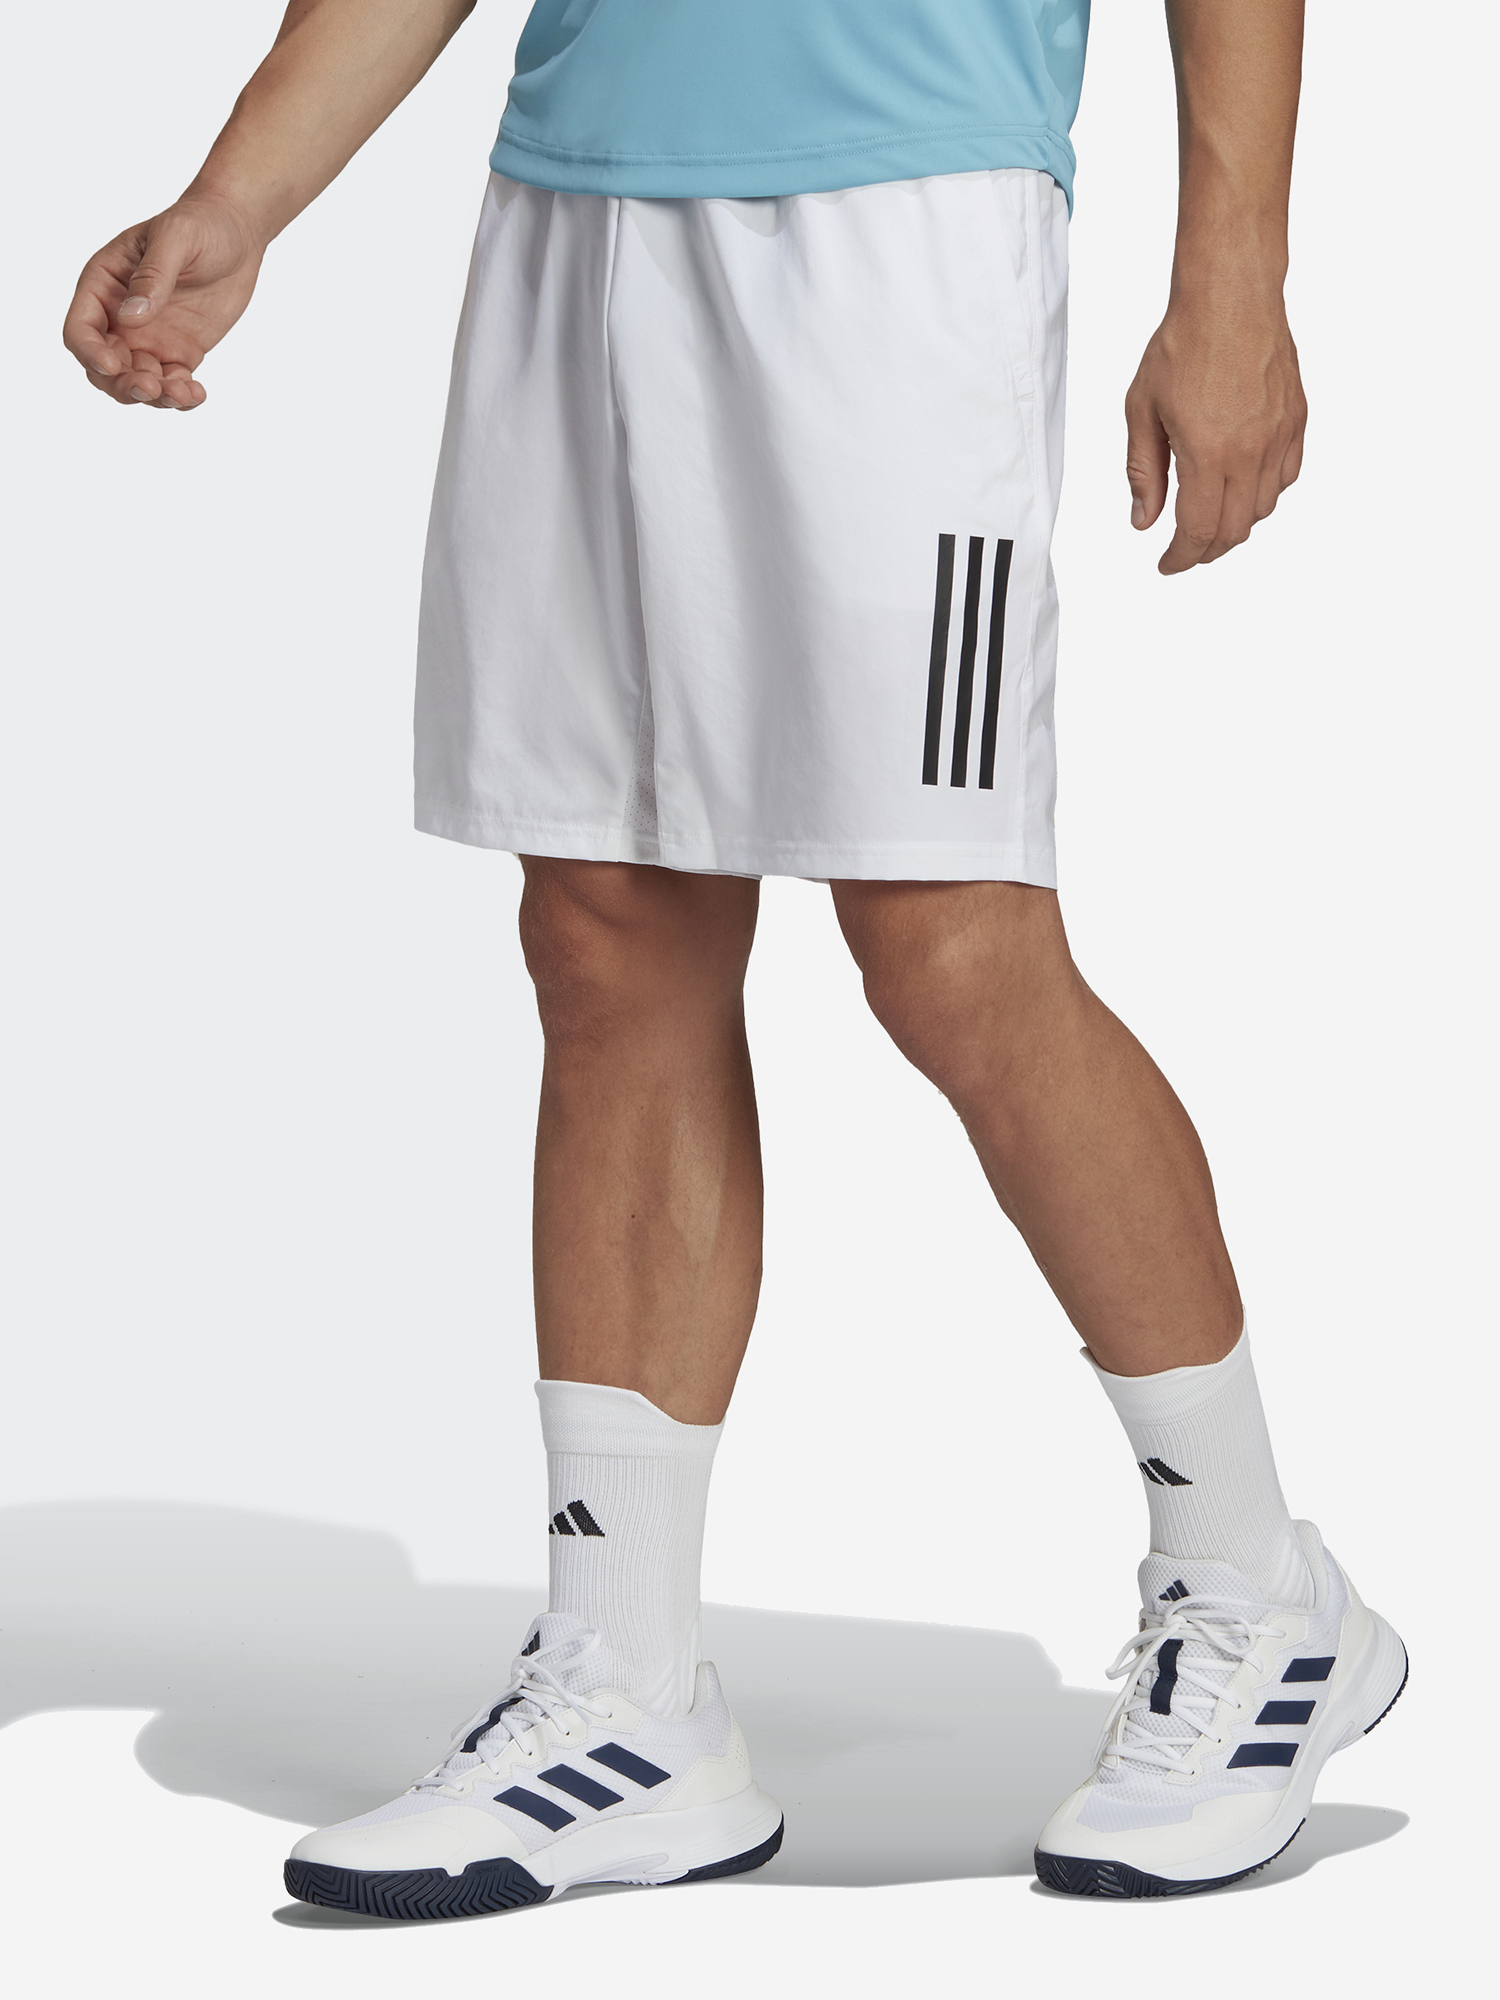 Шорты мужские adidas club, Белый шорты мужские adidas club 3 stripe tennis